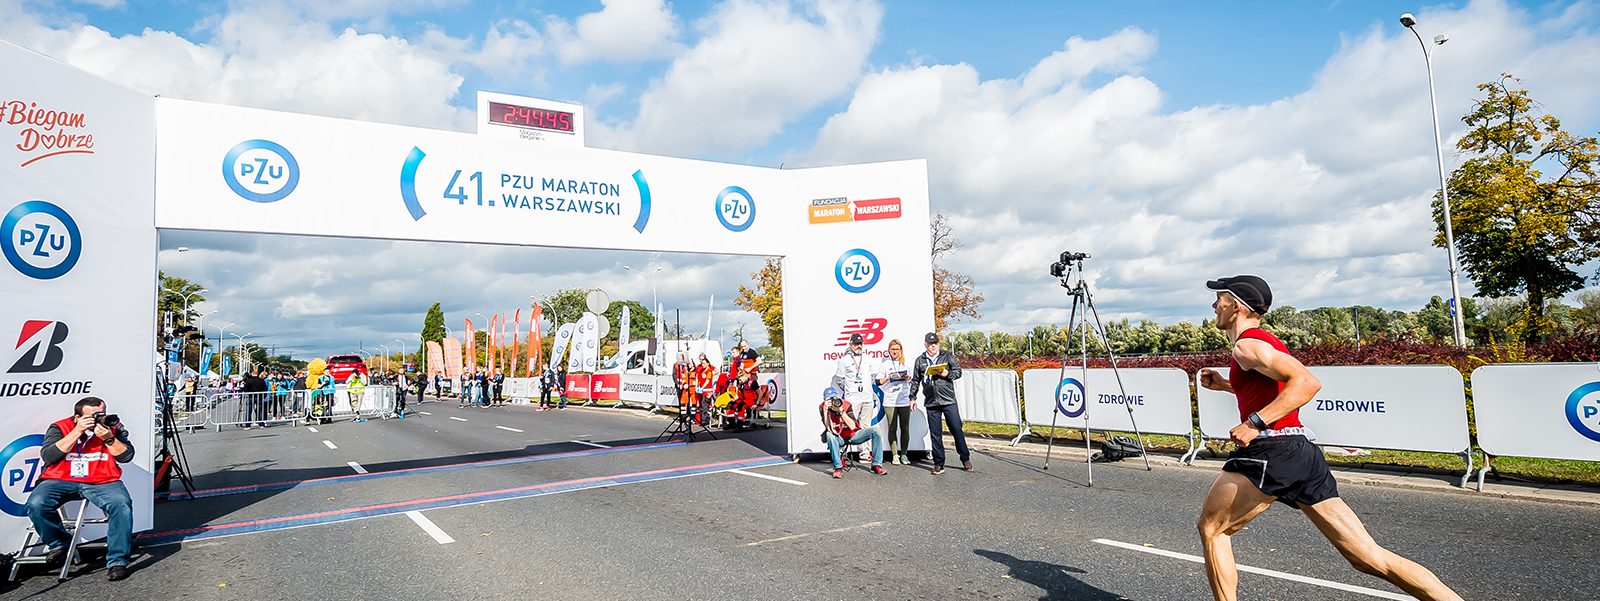 Trening do maratonu na ostatnie 8 tygodni - MagazynBieganie.pl